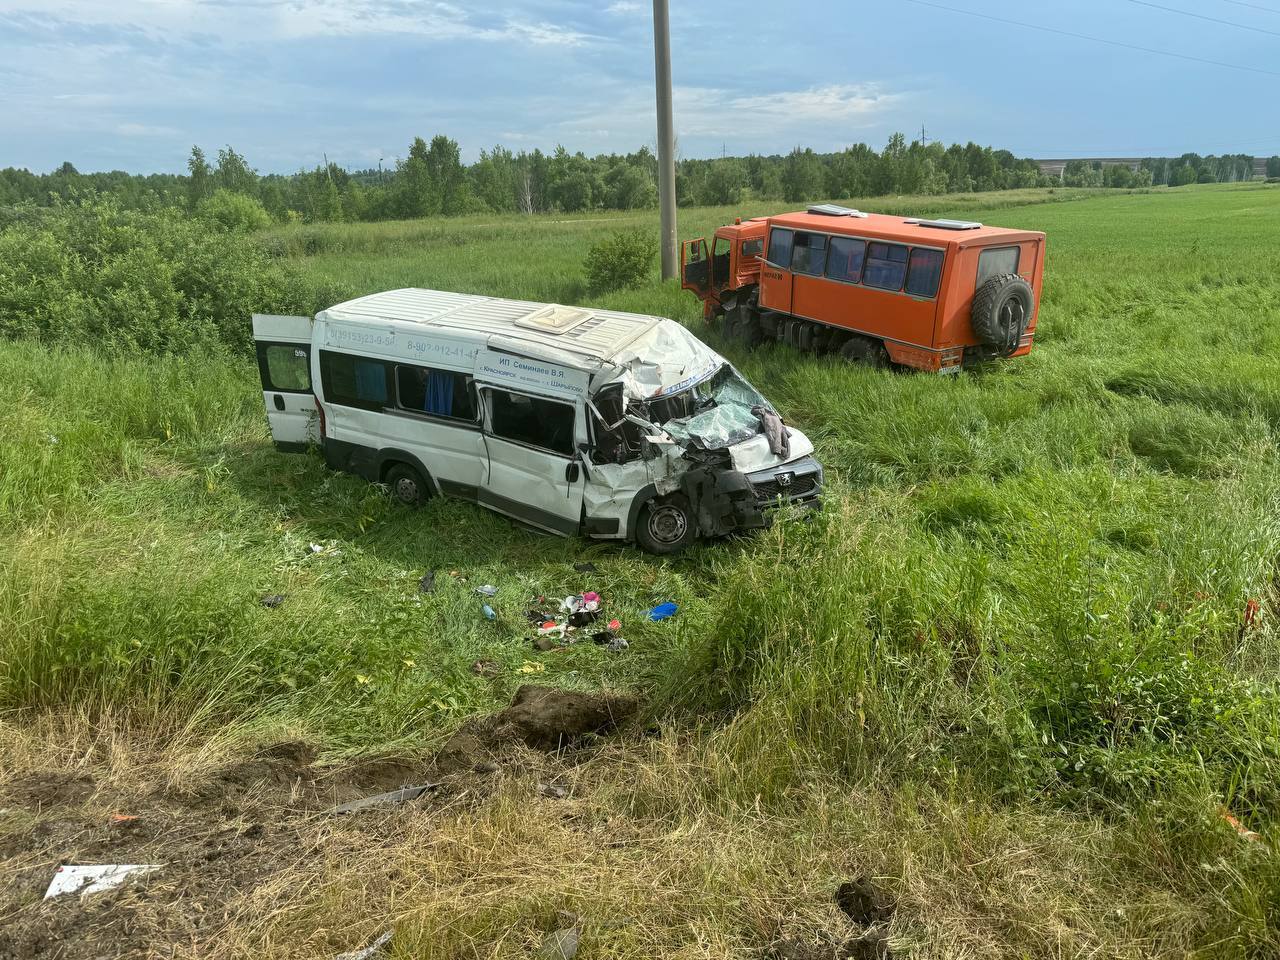 17 пострадавших: Микроавтобус с детьми попал в аварию на трассе в крае